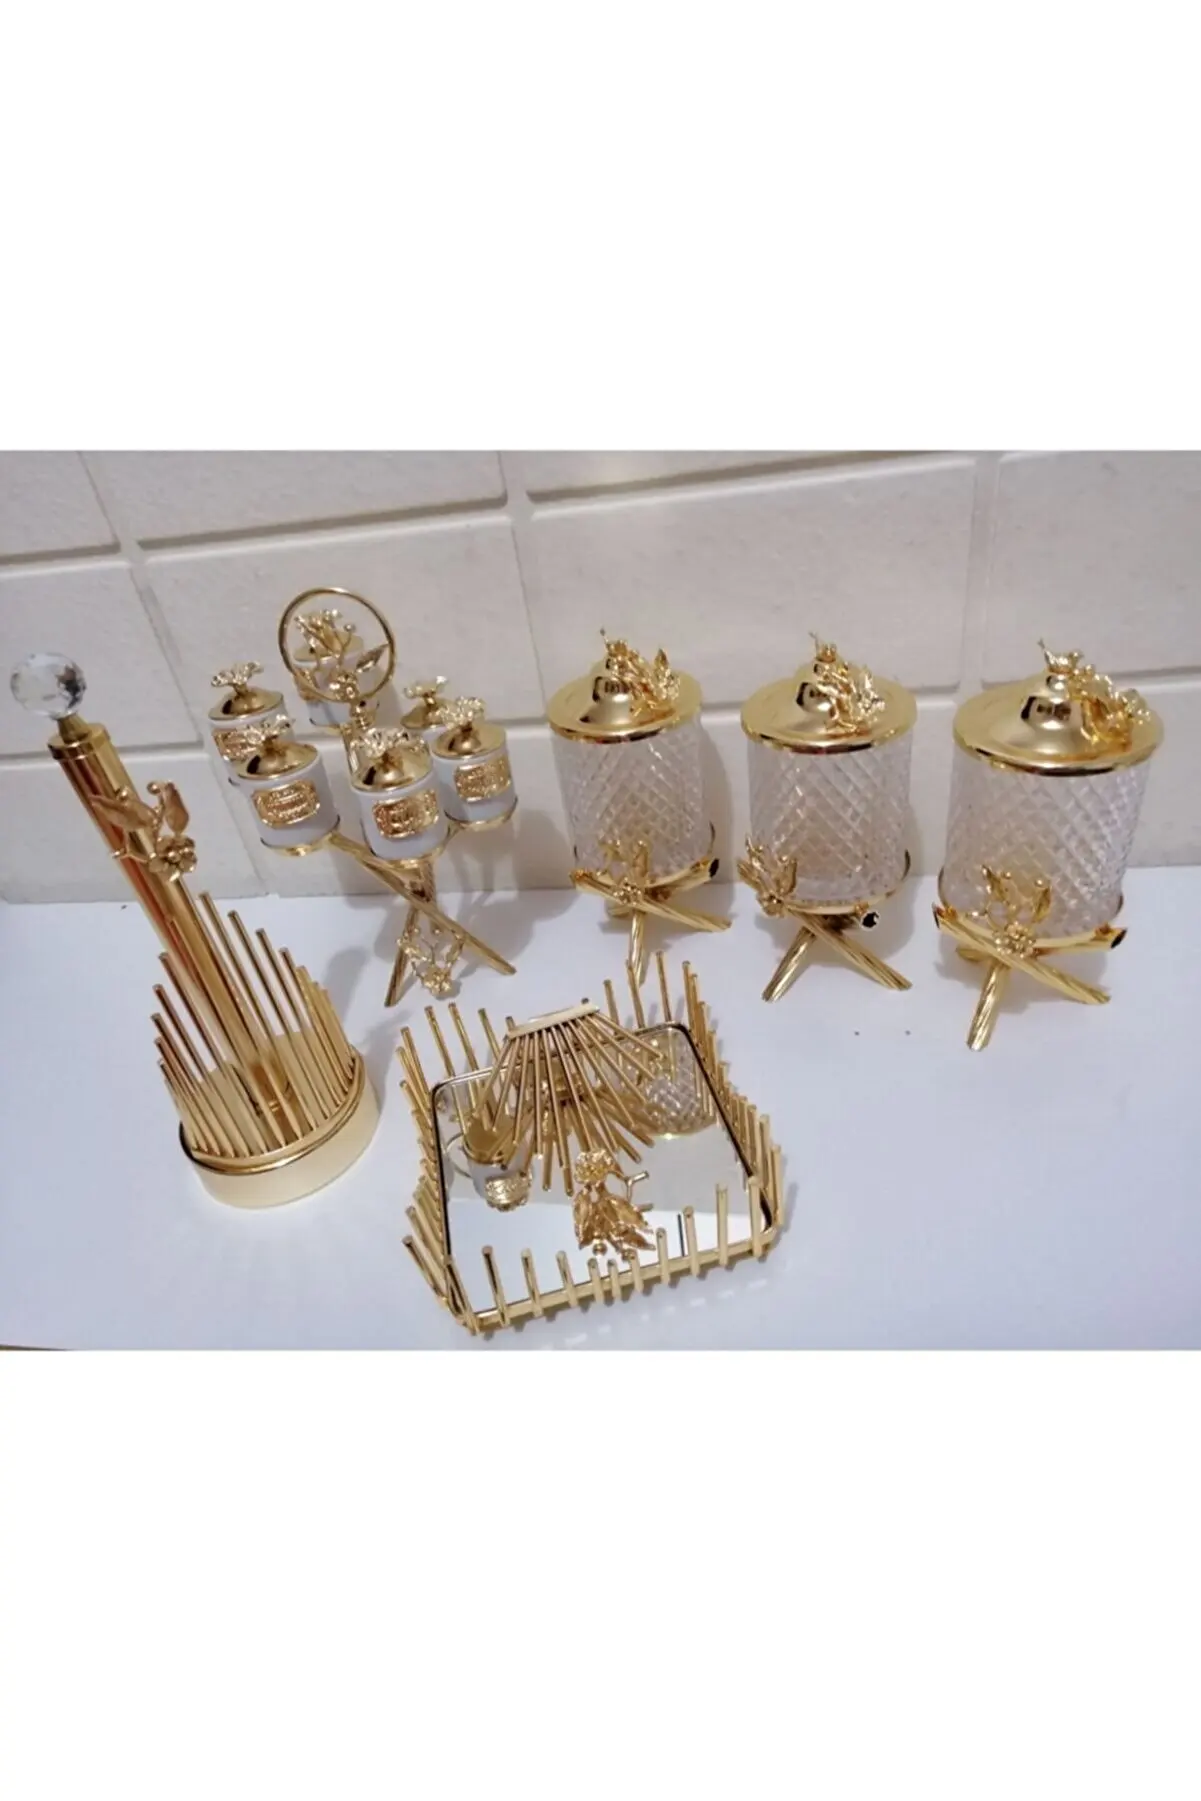 

Home Jar Set Spice Set Stand Napkin Holder Crystal Look Metal Fan Plated Decoration And Set Kitchen Presentation Utensils Gold